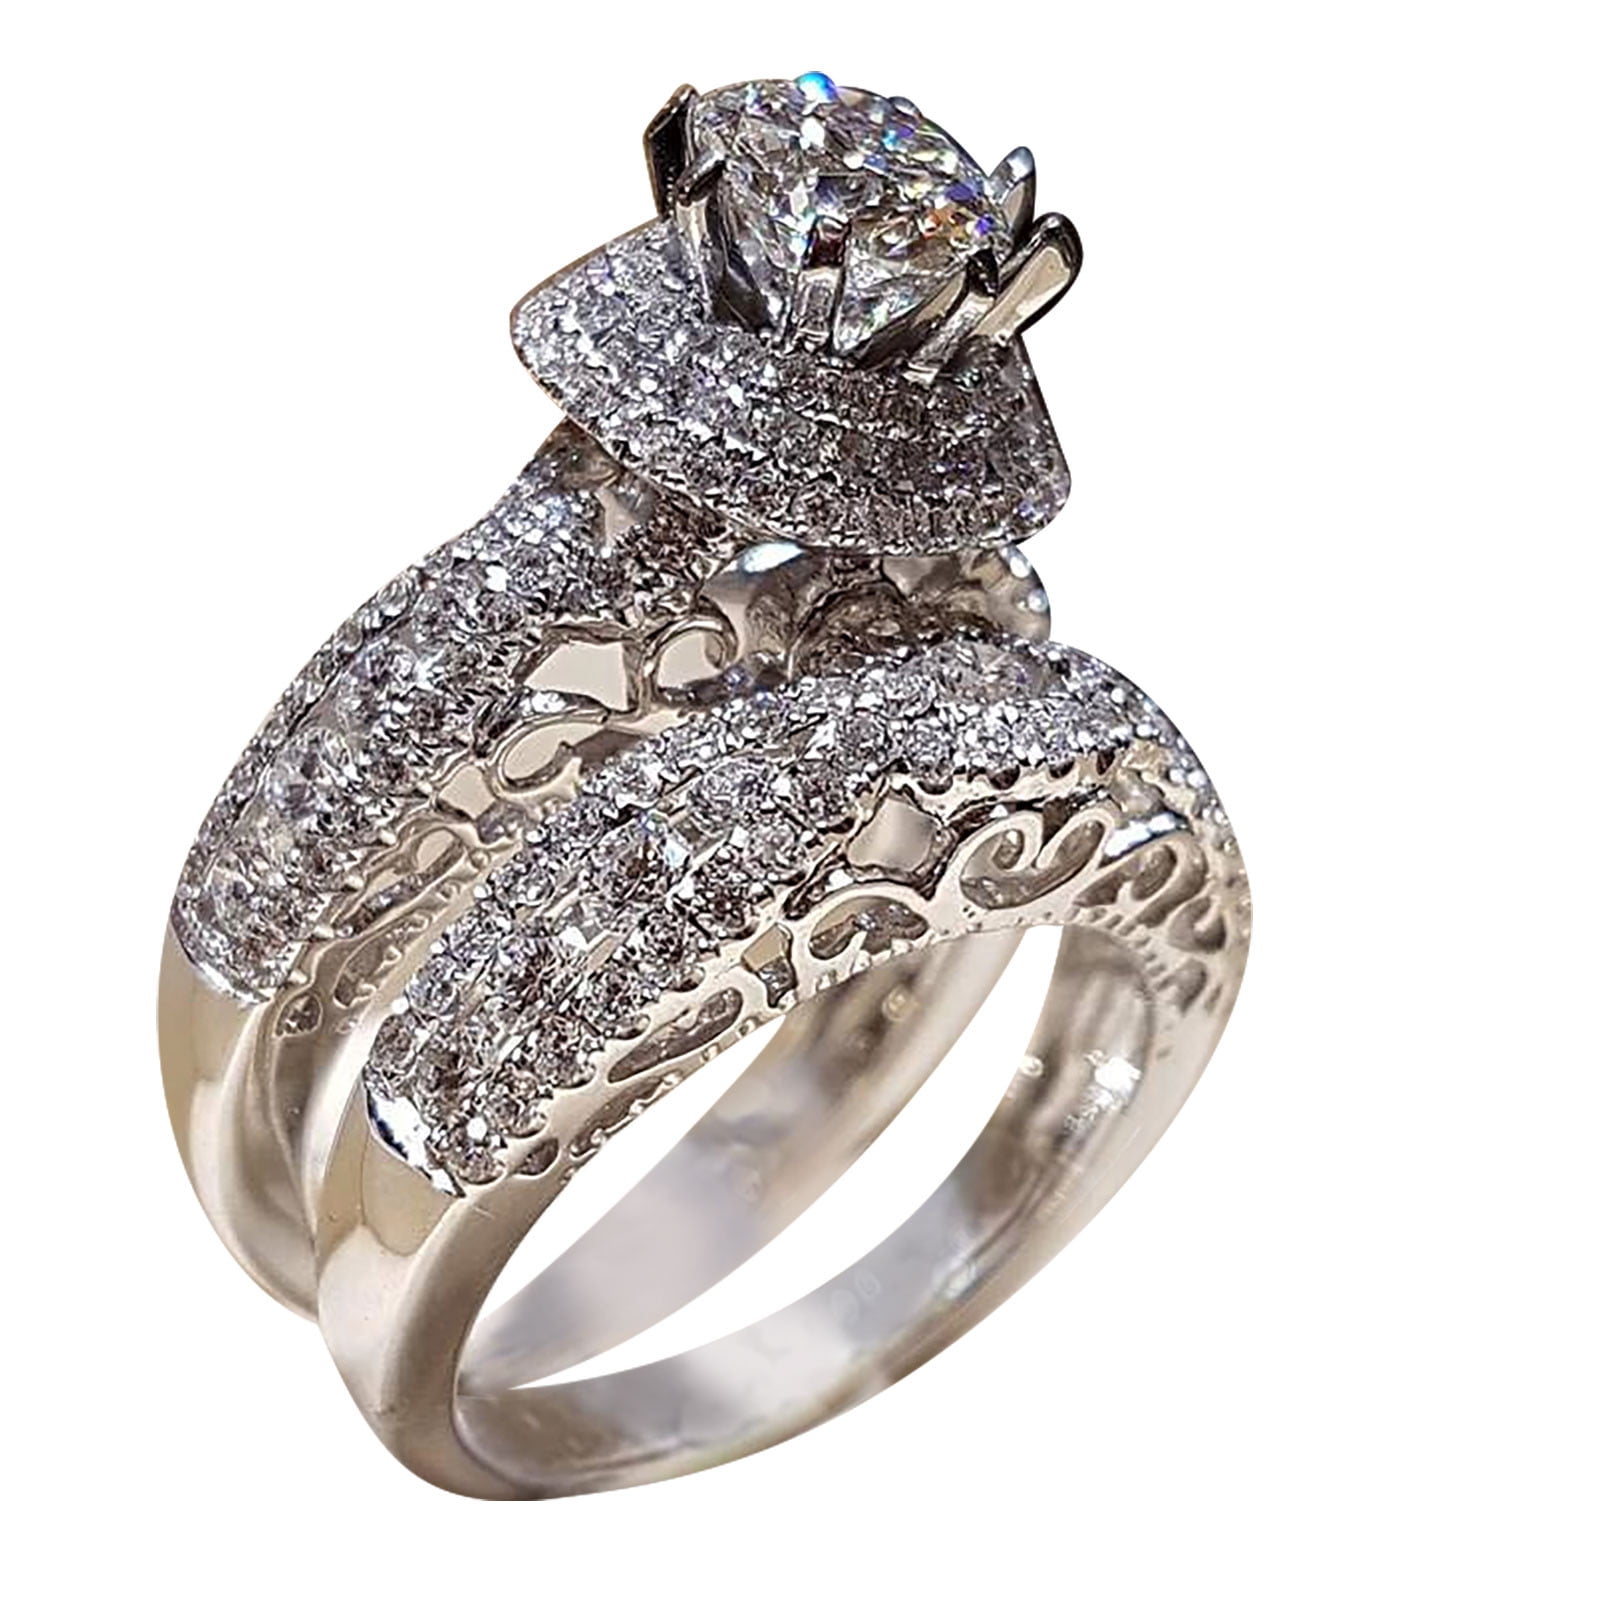 David Rosenberg 15.03 Carat Radiant Cut GIA Certified Diamond Engagement  Ring | Large engagement rings, Big engagement rings, Huge diamond rings